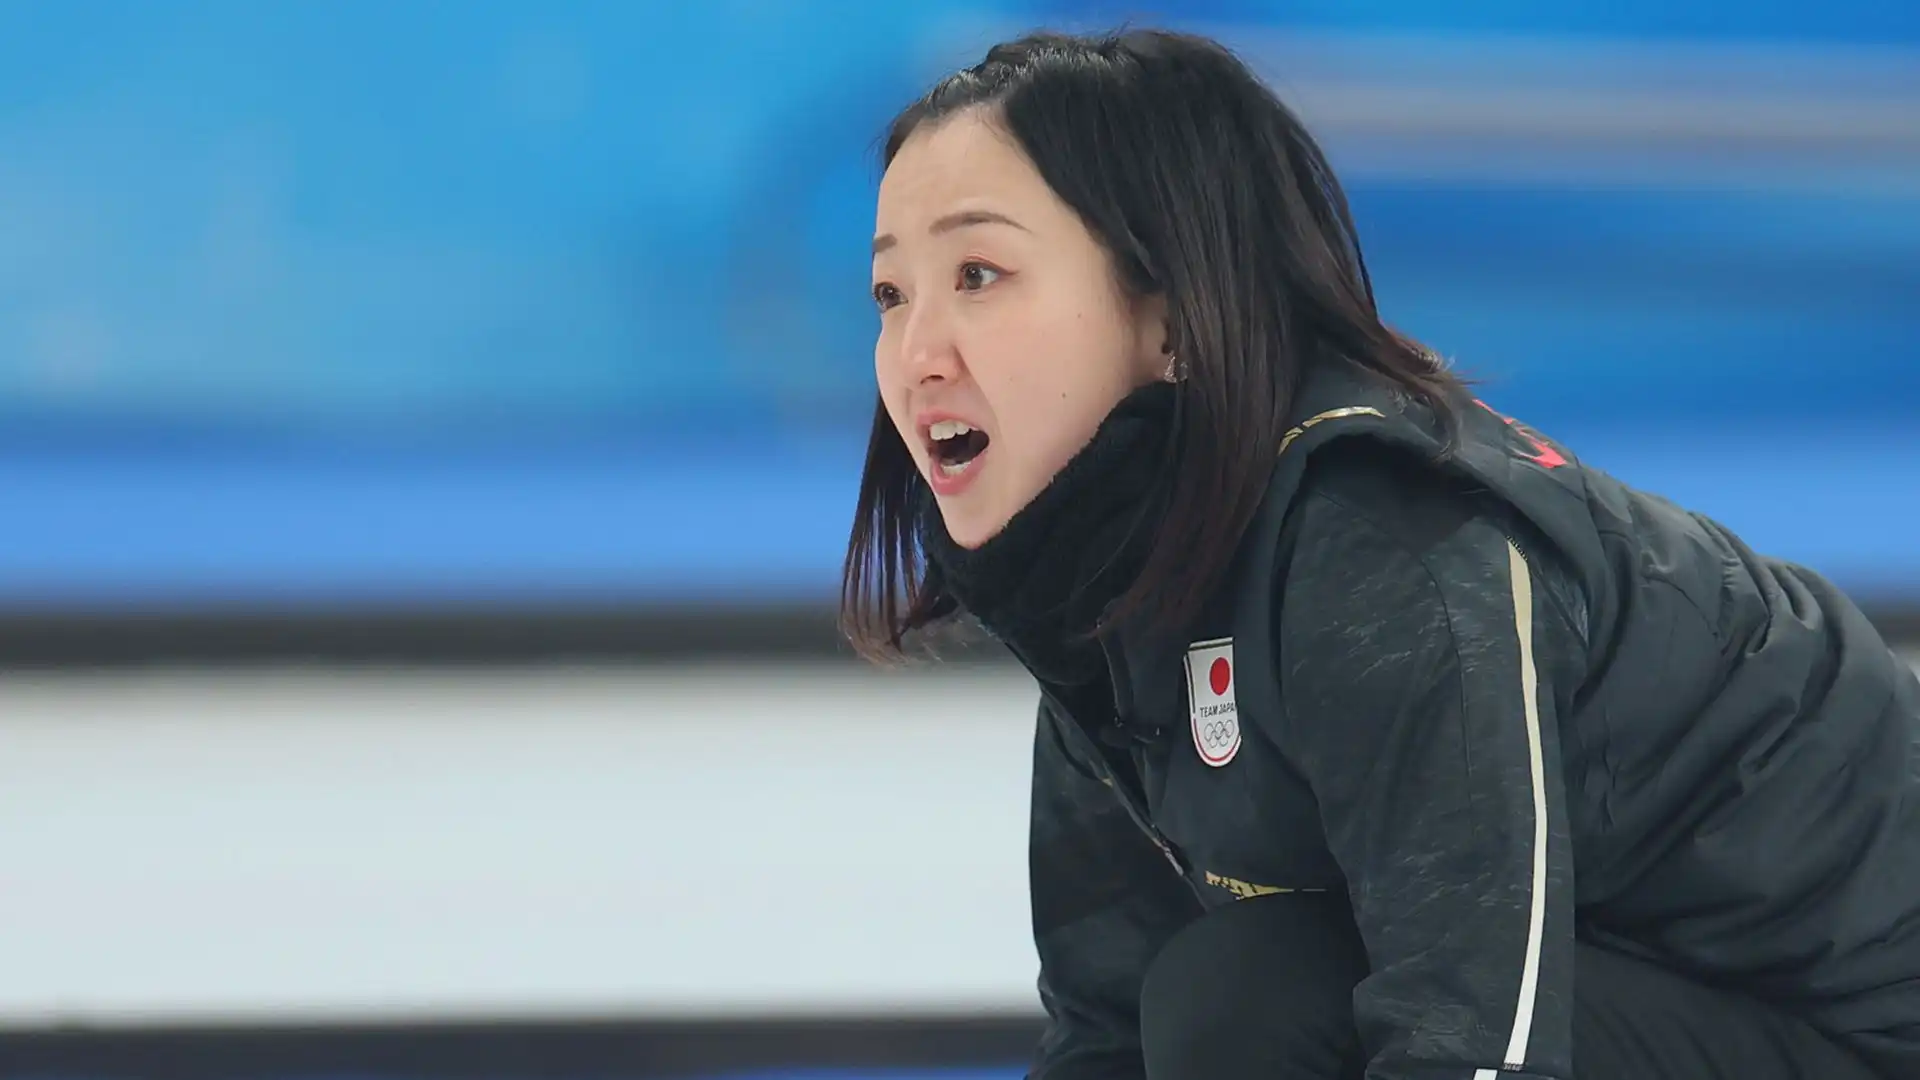 Satsuki Fujisawa è una giocatrice di curling, nata il 24 maggio 1991